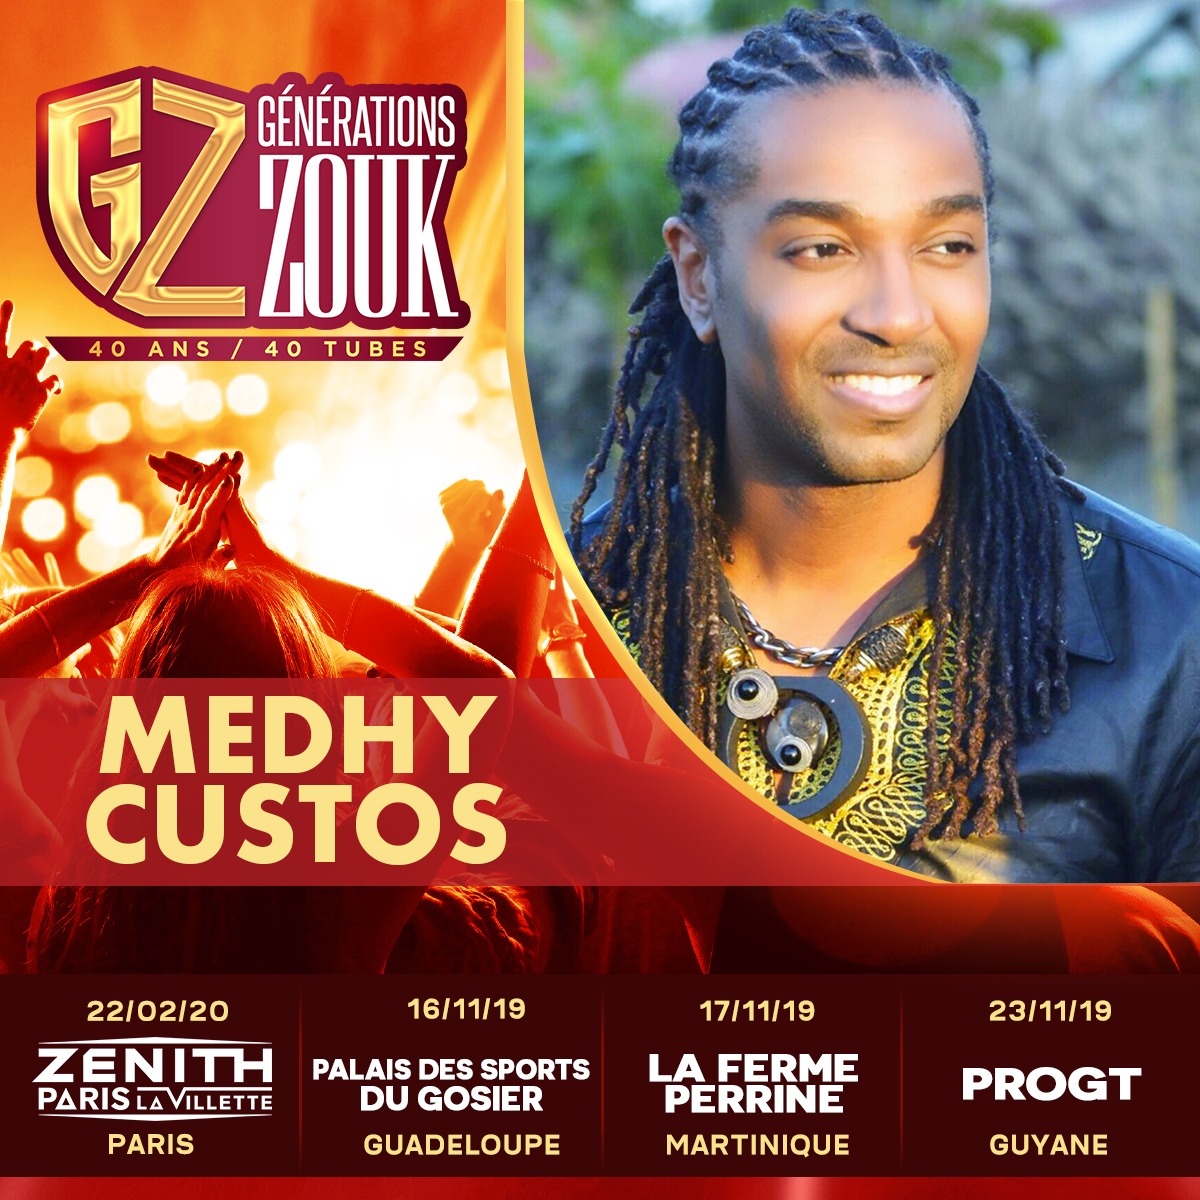 Générations Zouk, la tournée – Makrelaj – News Agenda des soirees antillaises Paris Martinique Guadeloupe